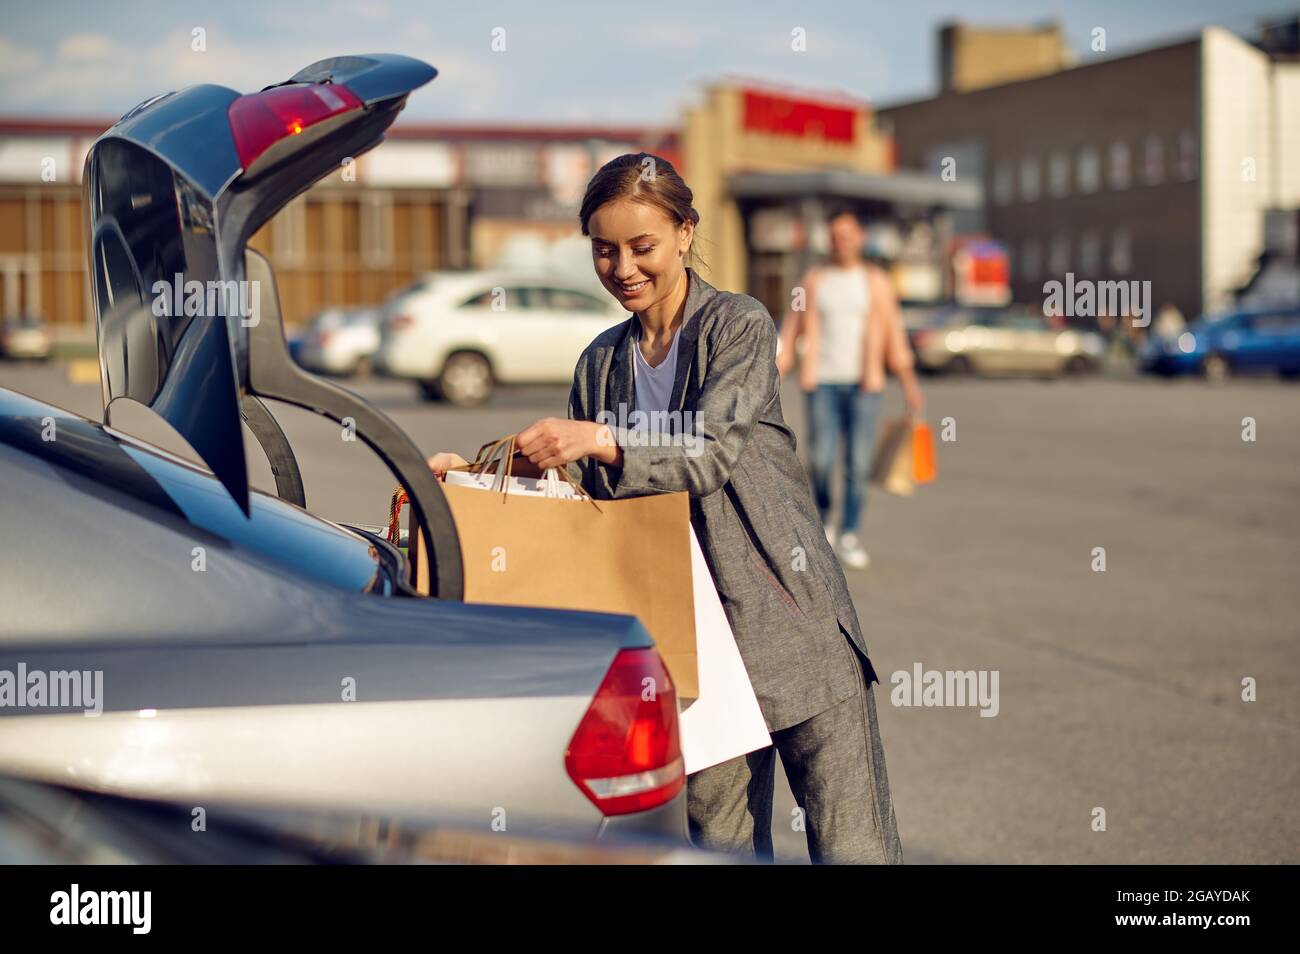 Frau Putten ihr Einkaufen Taschen in das Auto Kofferraum 23273414